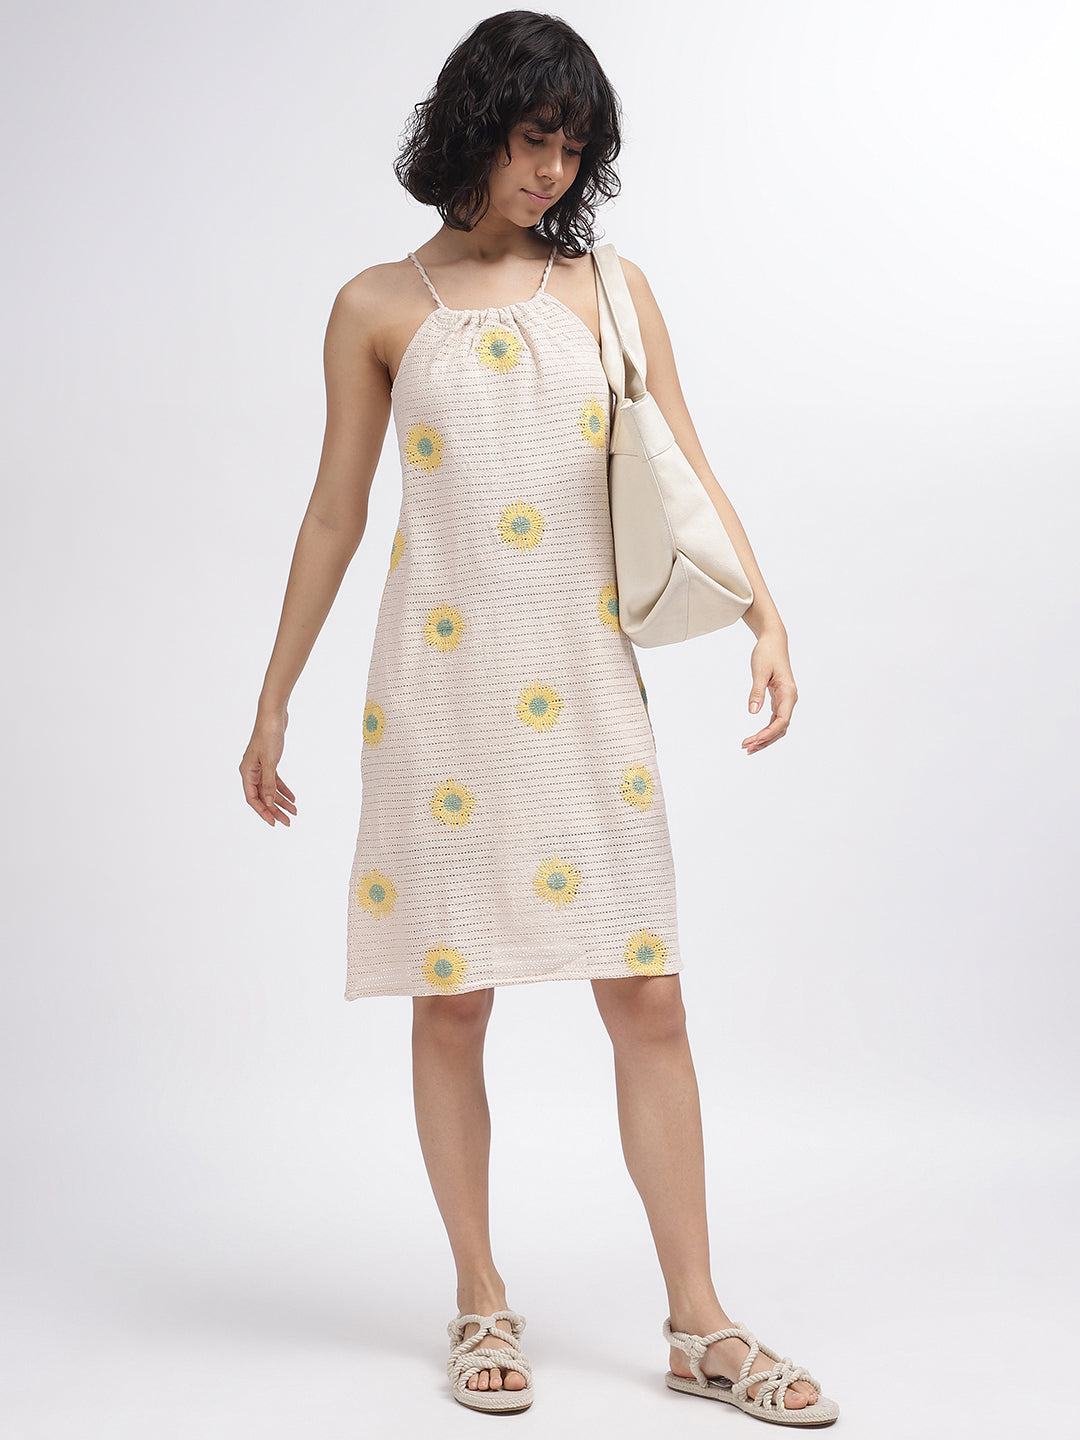 Elle Women Beige Self-Design Square Neck Shoulder Straps Dress